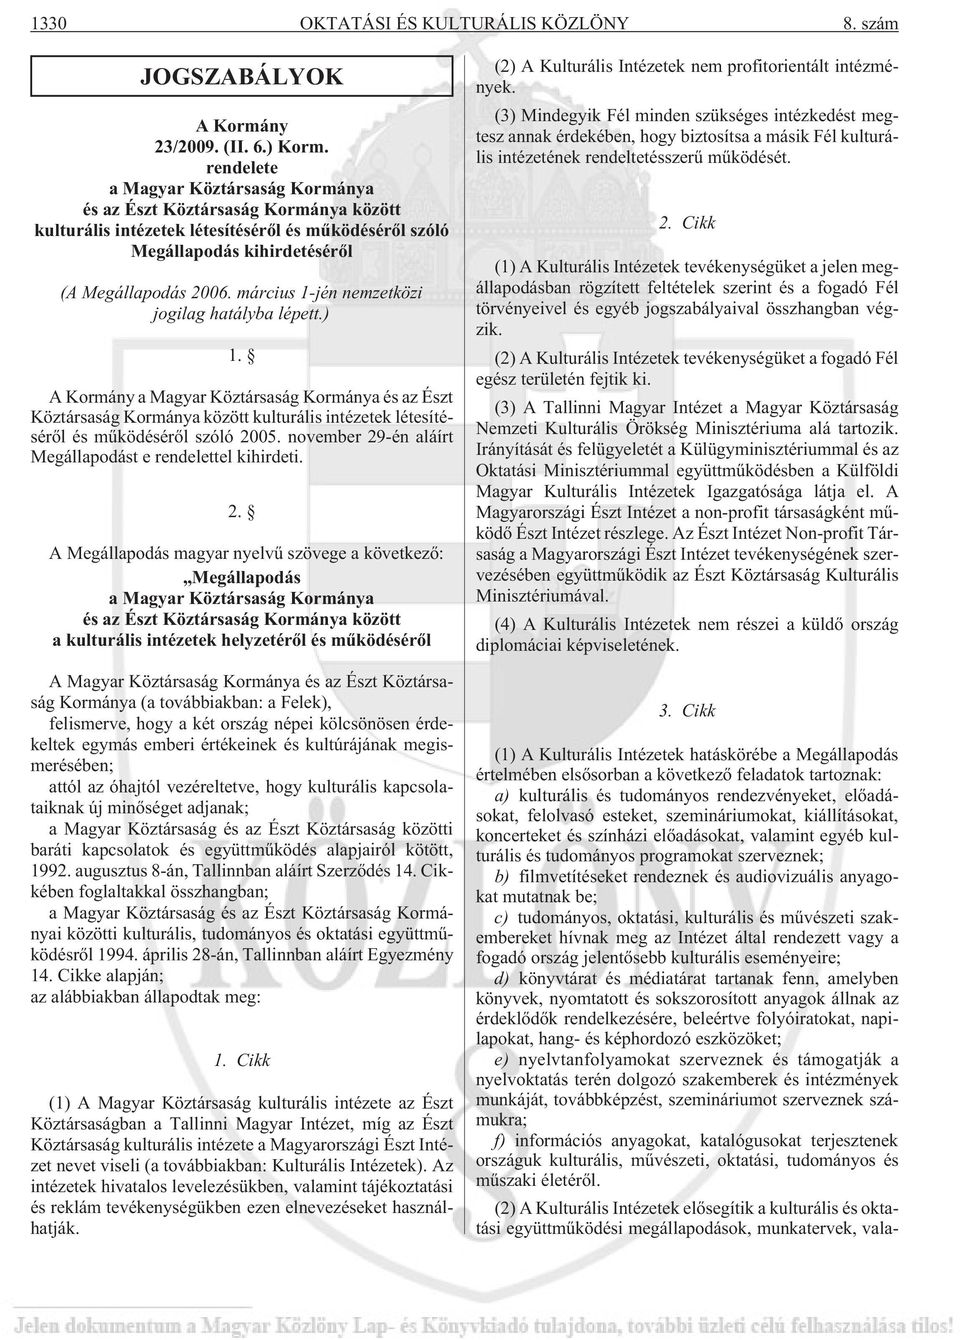 március 1-jén nemzetközi jogilag hatályba lépett.) 1. A Kormány a Magyar Köztársaság Kormánya és az Észt Köztársaság Kormánya között kulturális intézetek létesítésérõl és mûködésérõl szóló 2005.